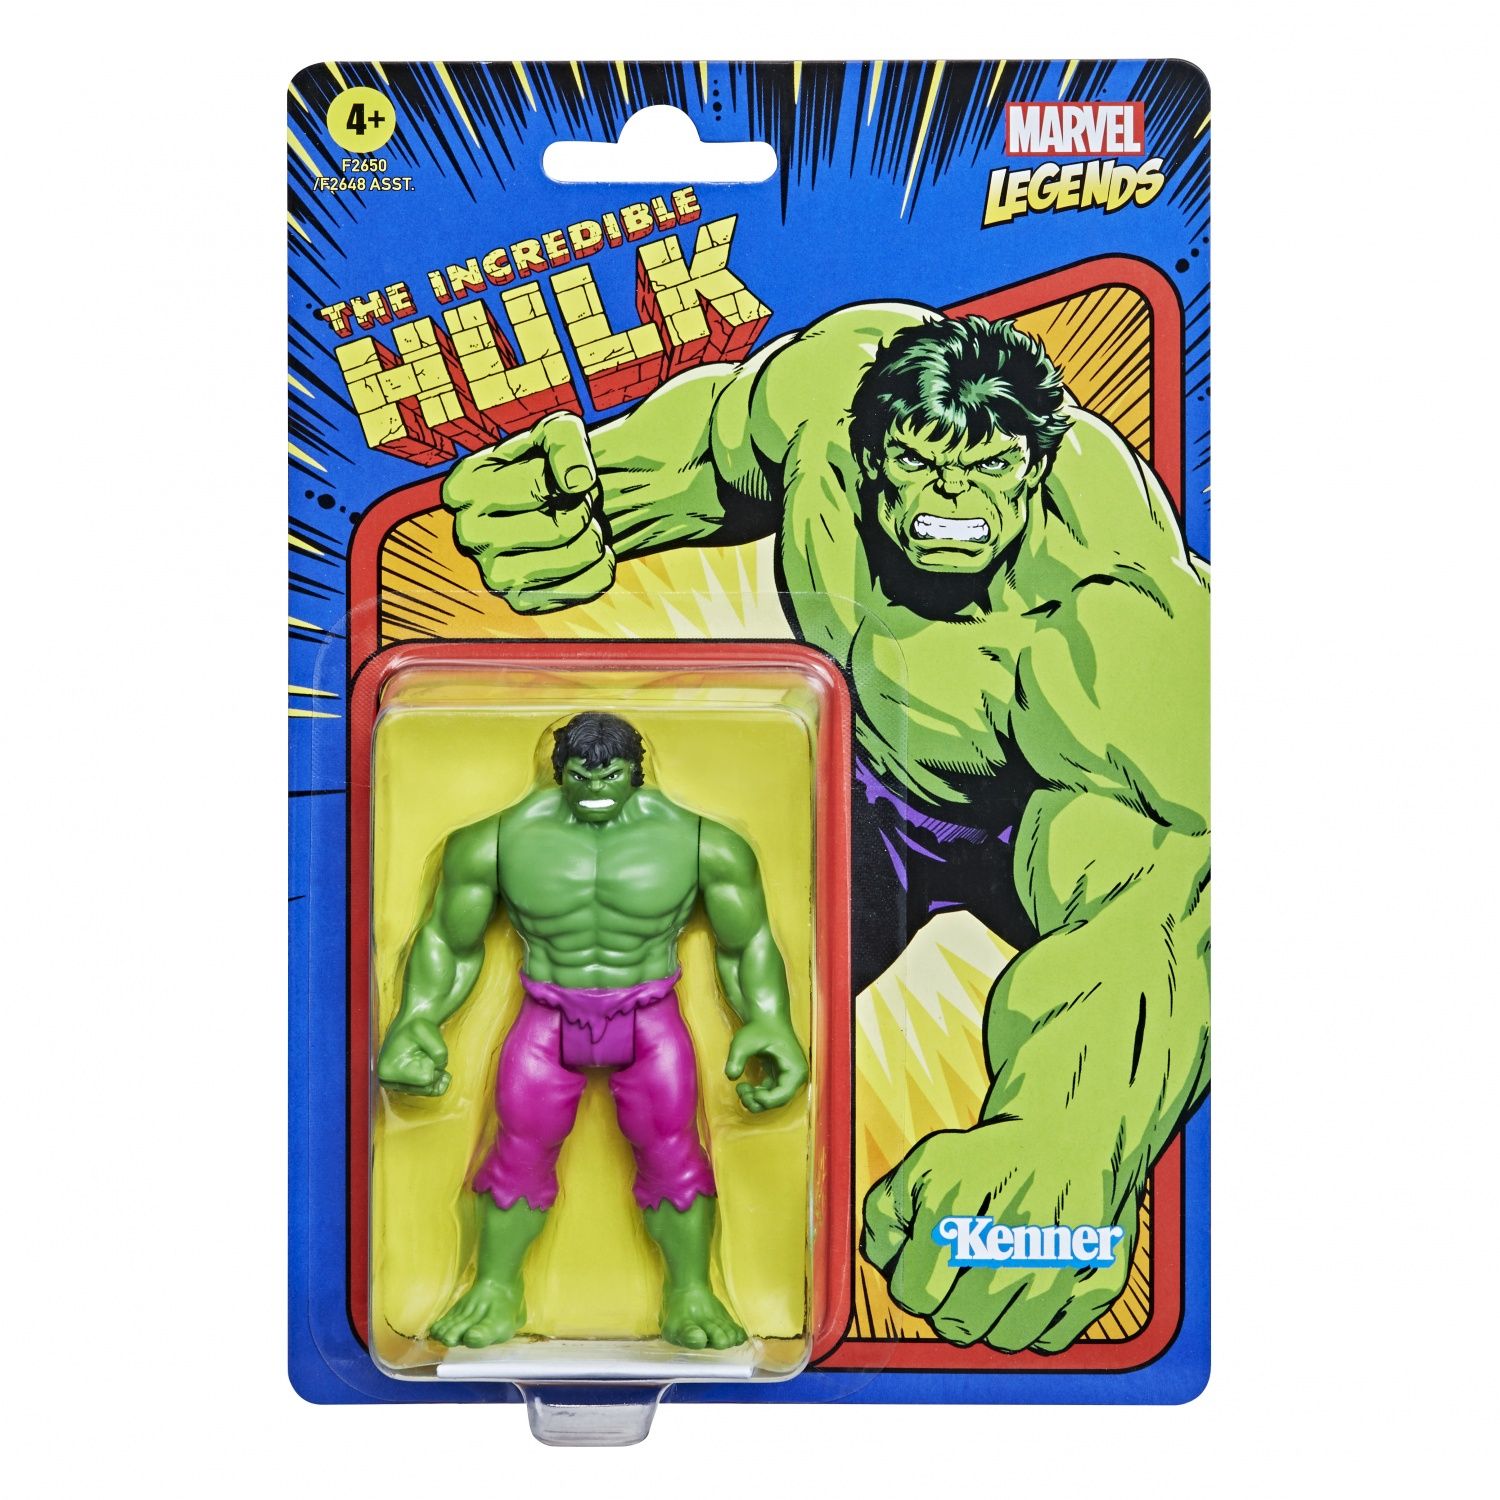 Figurine Hulk de 9,5 cm Marvel – L'ARBRE AUX LUTINS